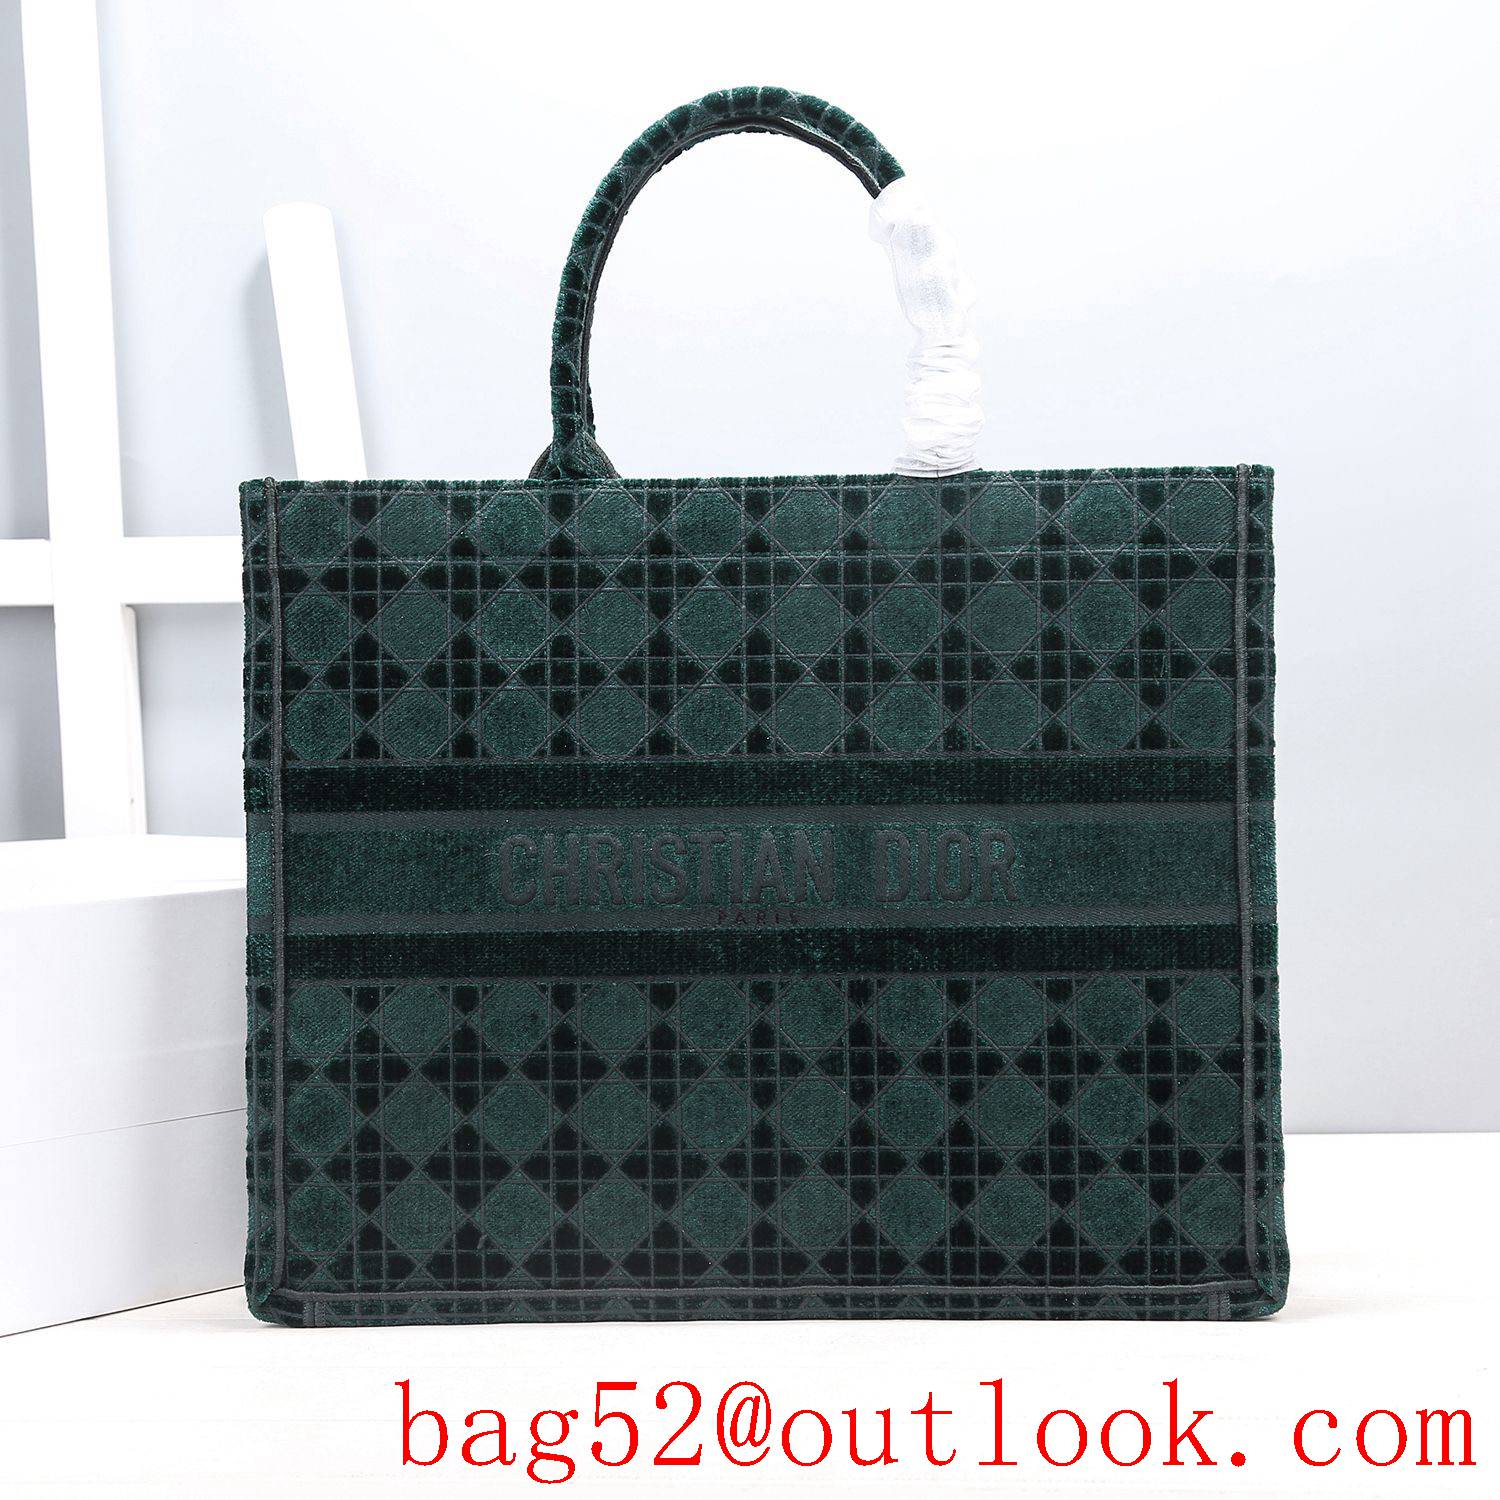 Dior velvet tote shopping handbag green large bag